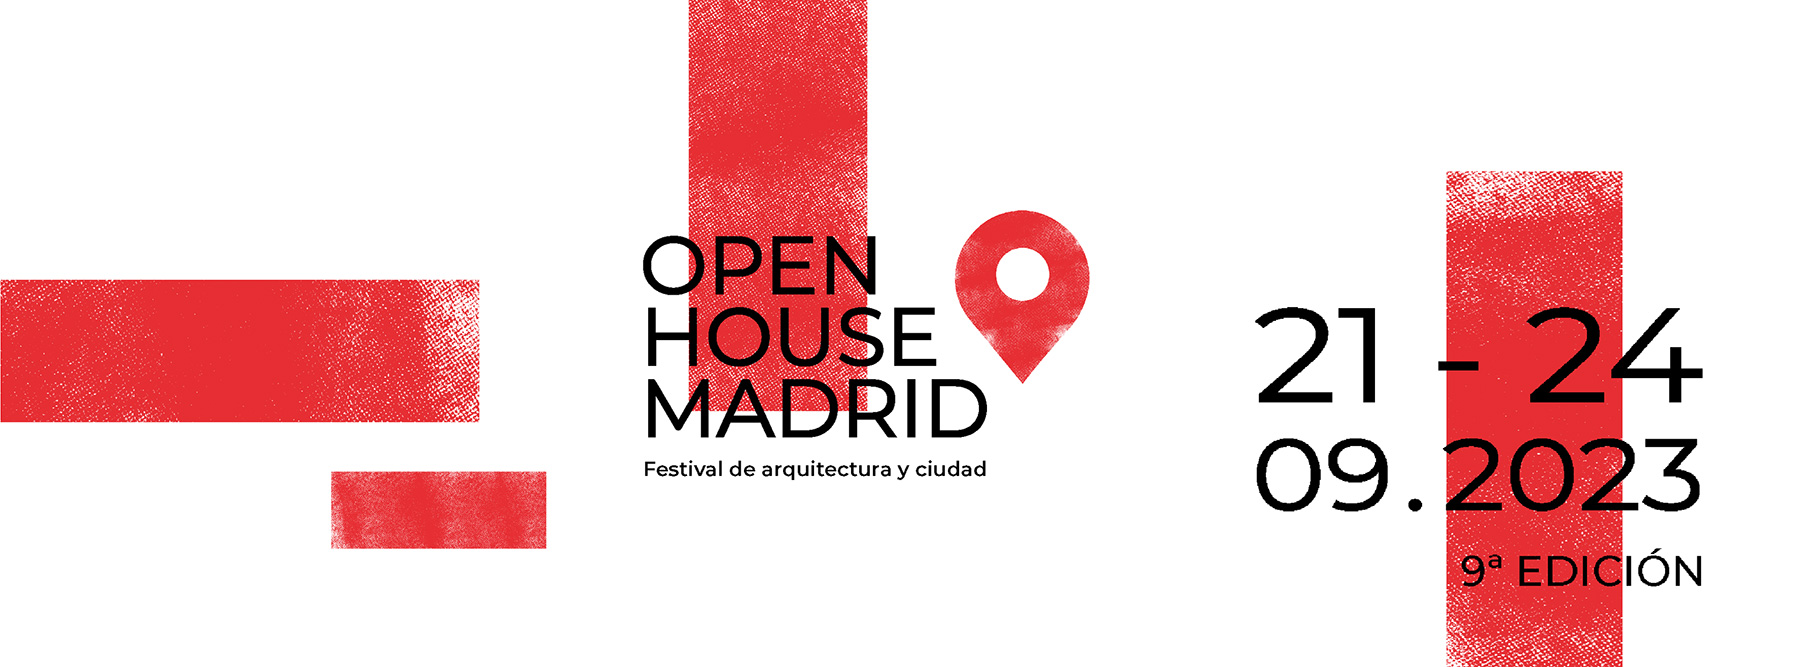 9ª Edición Open House Madrid, del 21 al 24 de septiembre